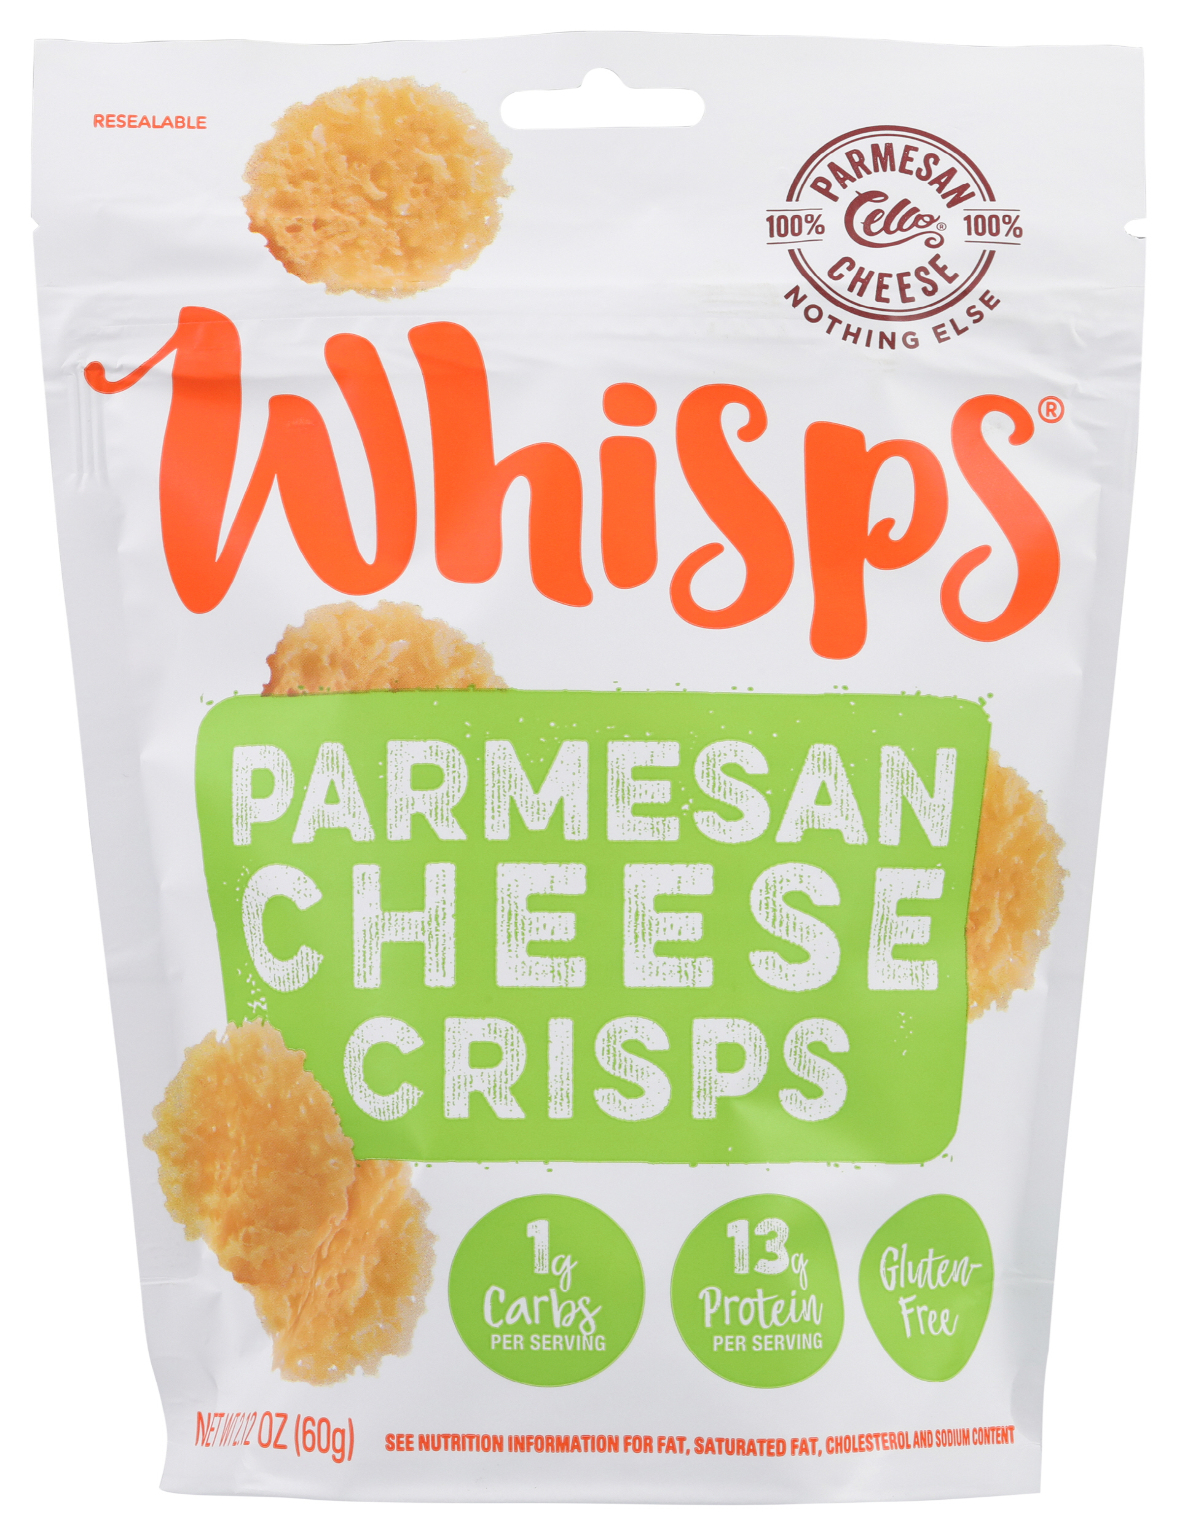 Wholesale Whisps Parmesan Cheese Crisps 2 12 Oz Sku 2345703 Dollardays,Sweet Gum Tree